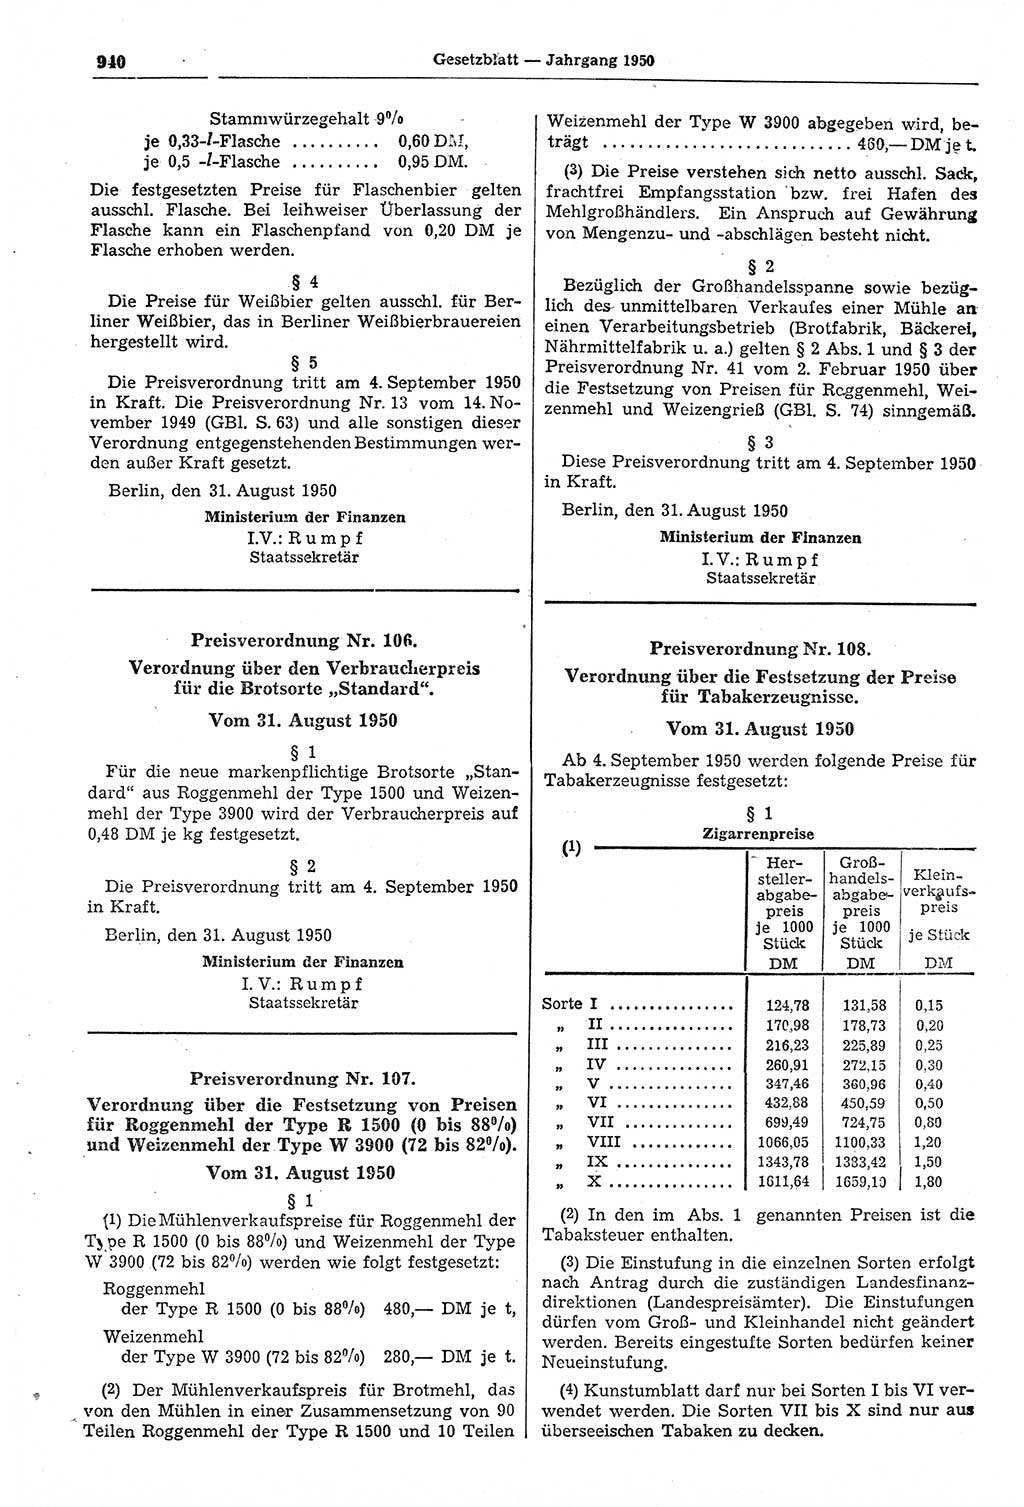 Gesetzblatt (GBl.) der Deutschen Demokratischen Republik (DDR) 1950, Seite 940 (GBl. DDR 1950, S. 940)